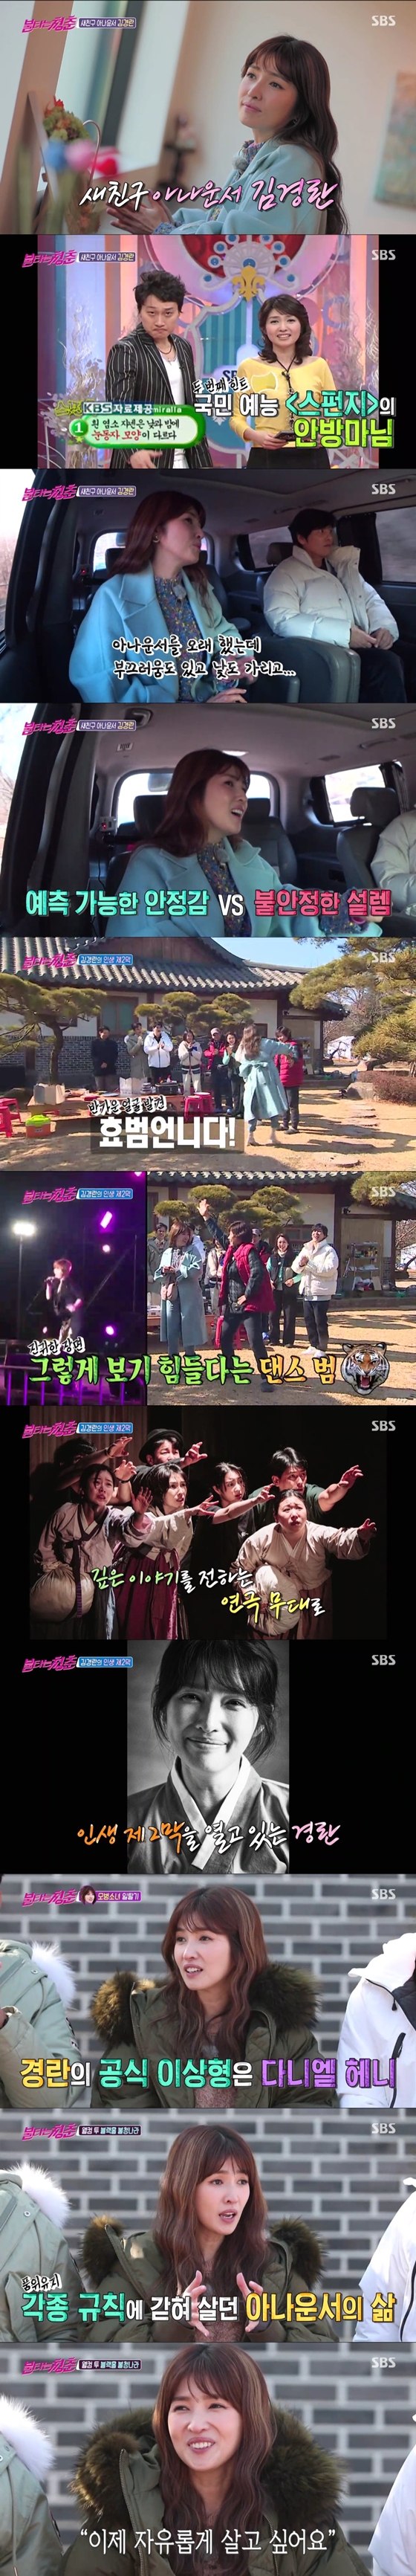 아나운서 출신 방송인 김경란이 SBS '불타는 청춘'에 출연해 최고의 1분을 차지했다./사진제공=SBS